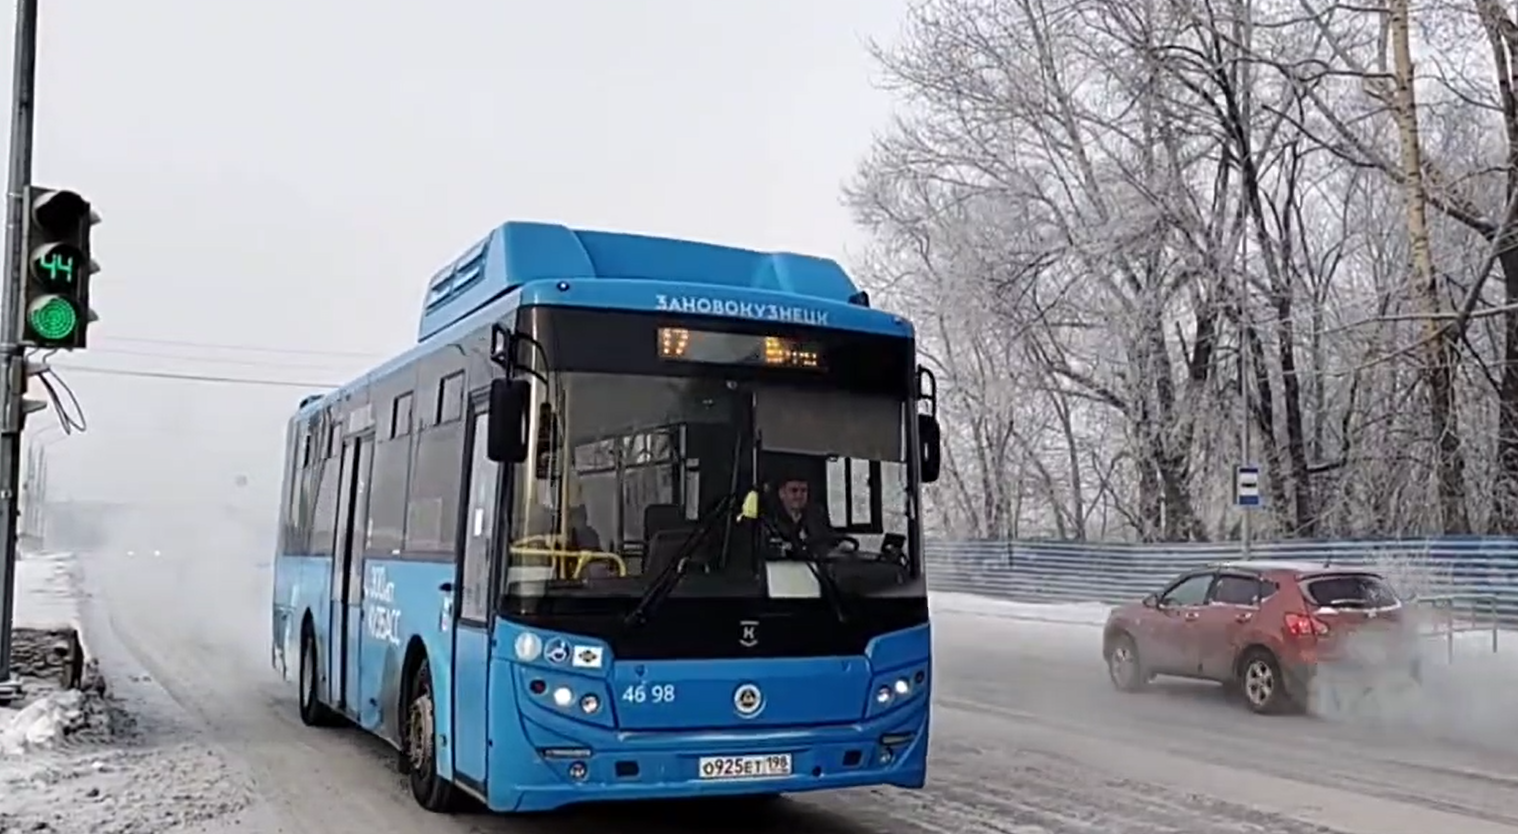 Больной вопрос: когда у новокузнечан не будет проблем с транспортом?